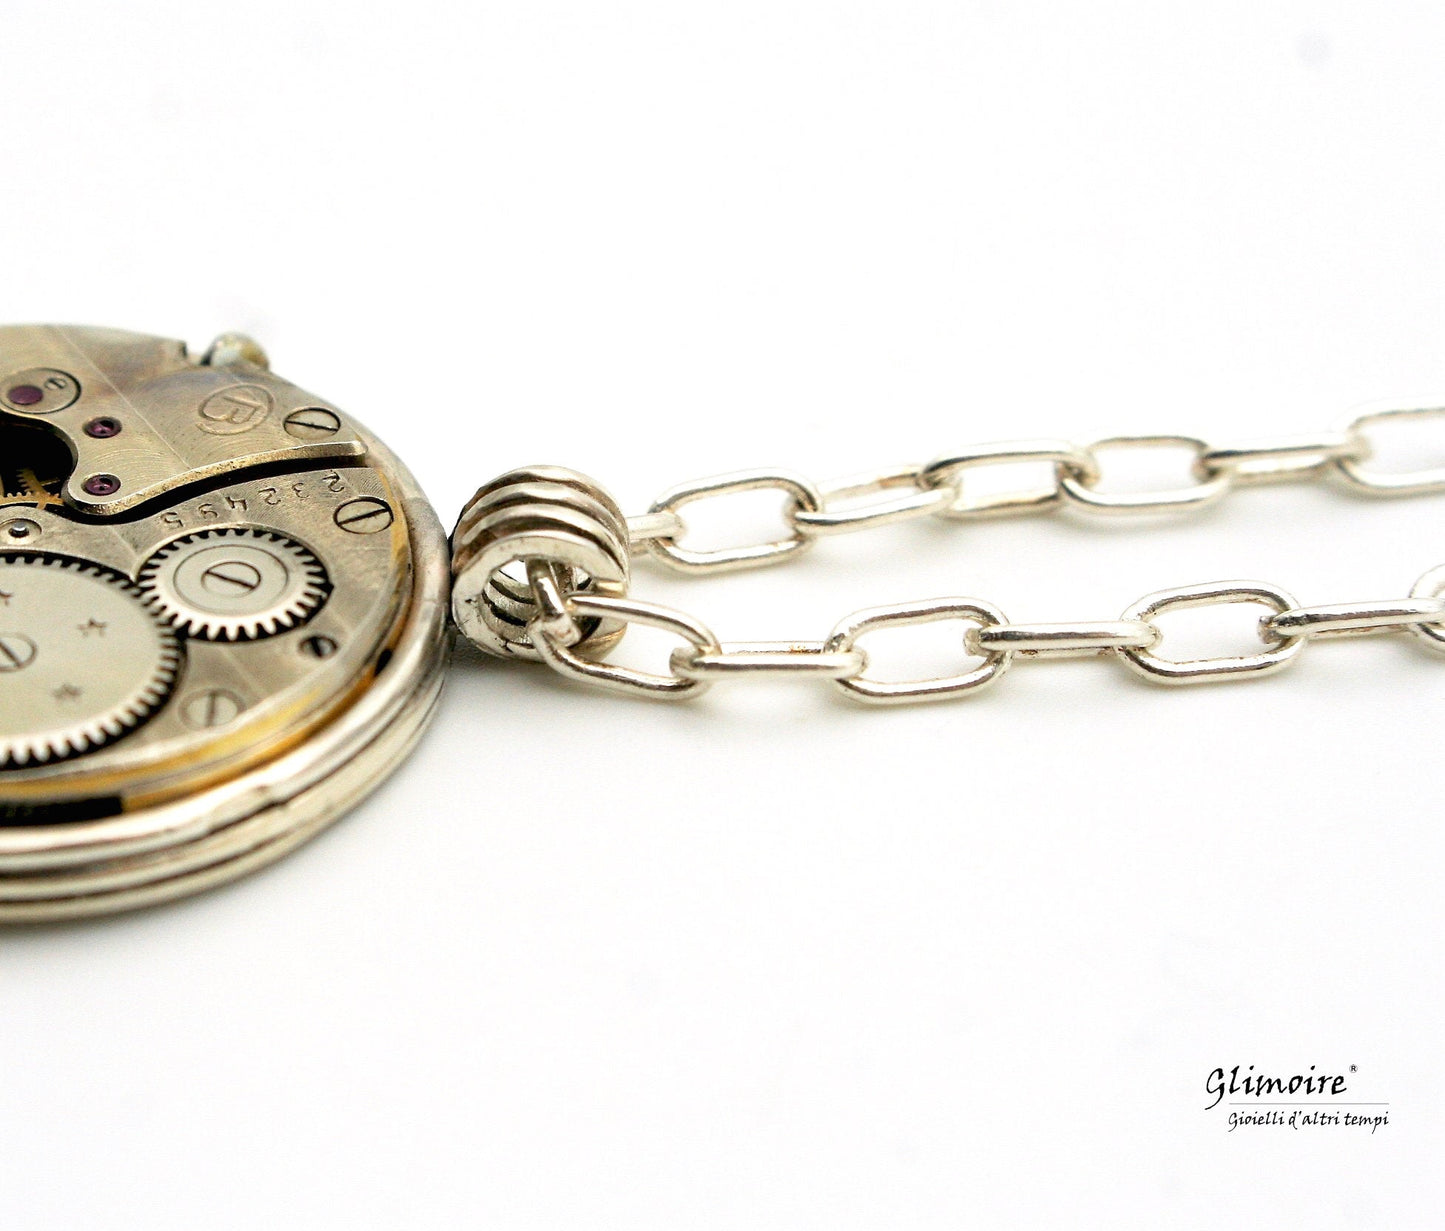 Medaglione con meccanismo d'orologio d'epoca - Pendente con ingranaggio d'orologio collana con catenina in argento art.269b - Glimoire